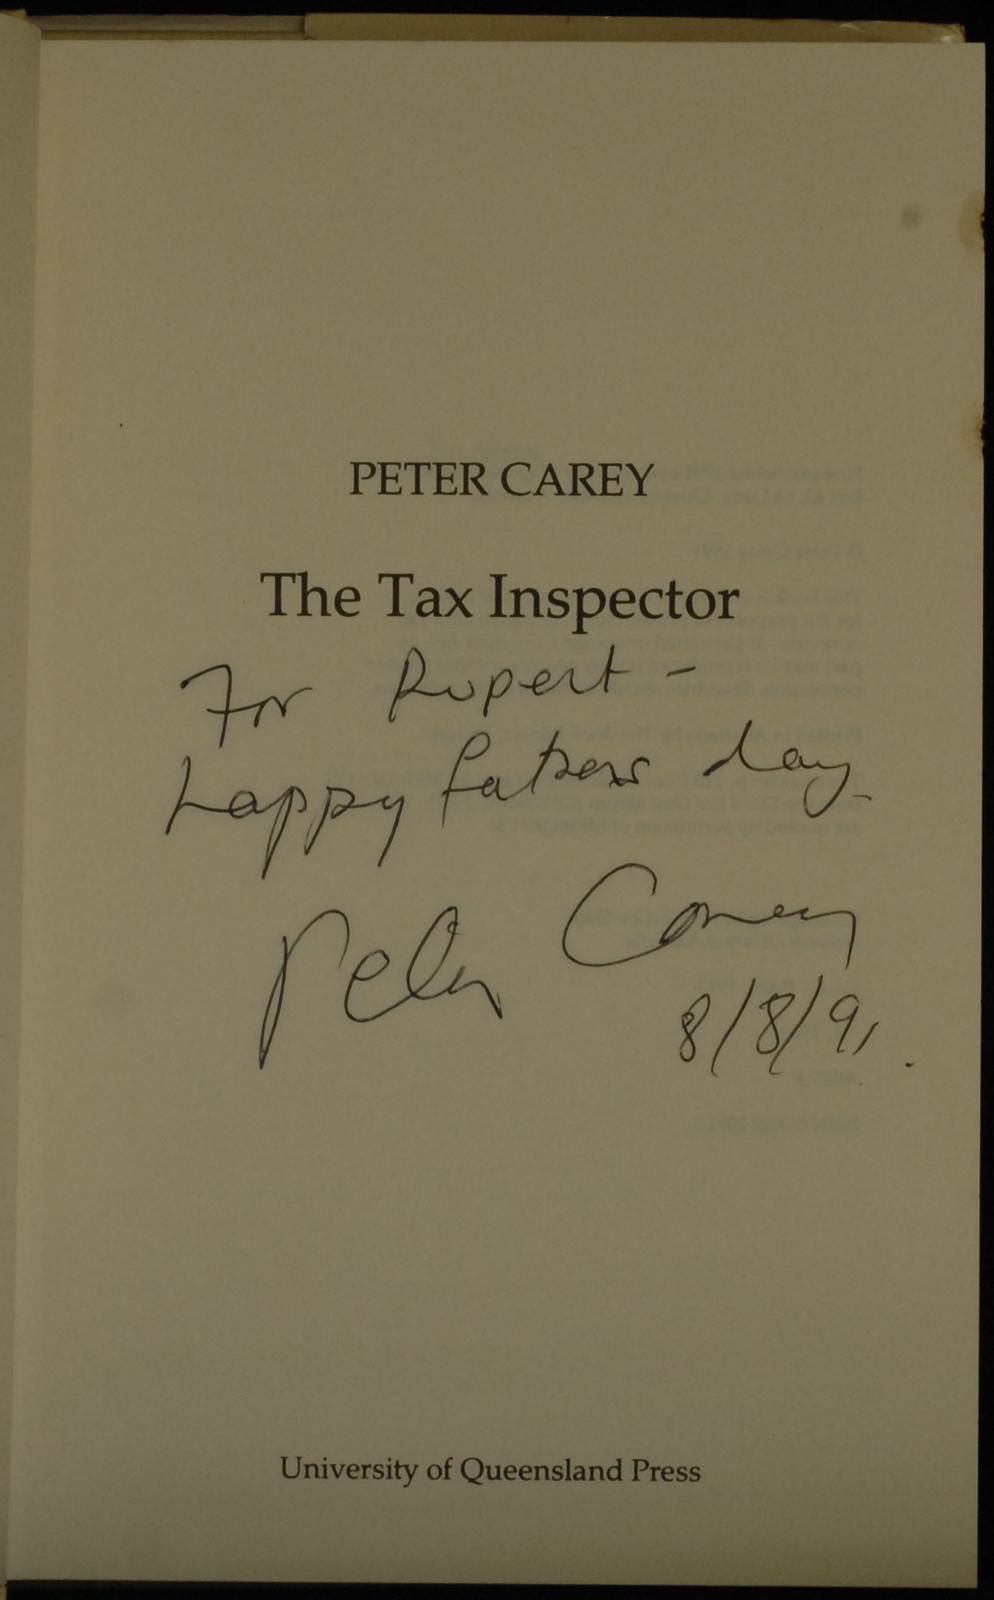 mbb006093b_-_Carey_Peter_-_The_Tax_Inspector.jpg